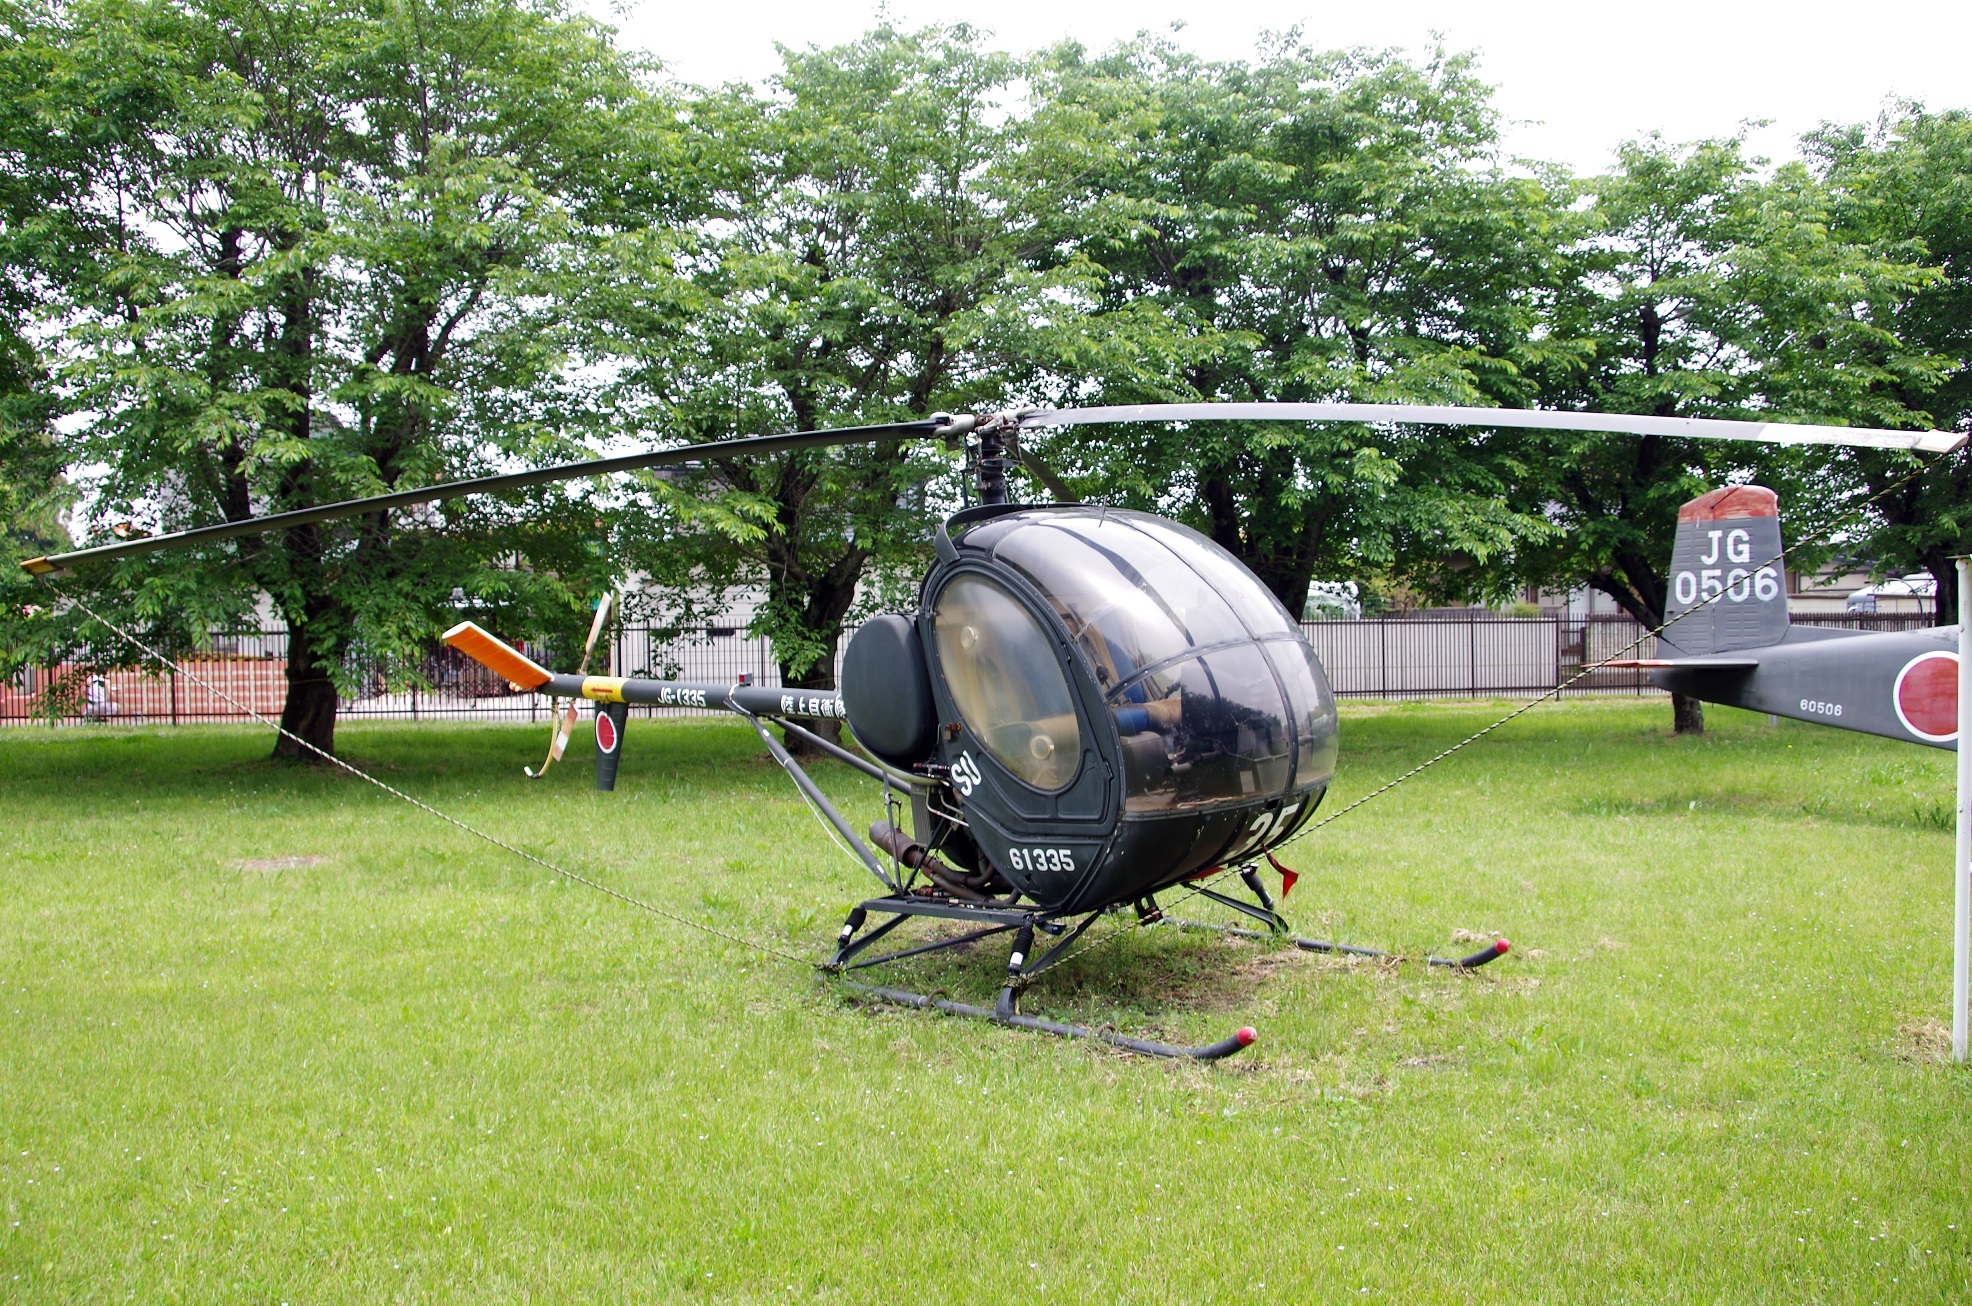 練習ヘリコプター エンストロムTH-480B｜陸上自衛隊装備品｜陸自調査団